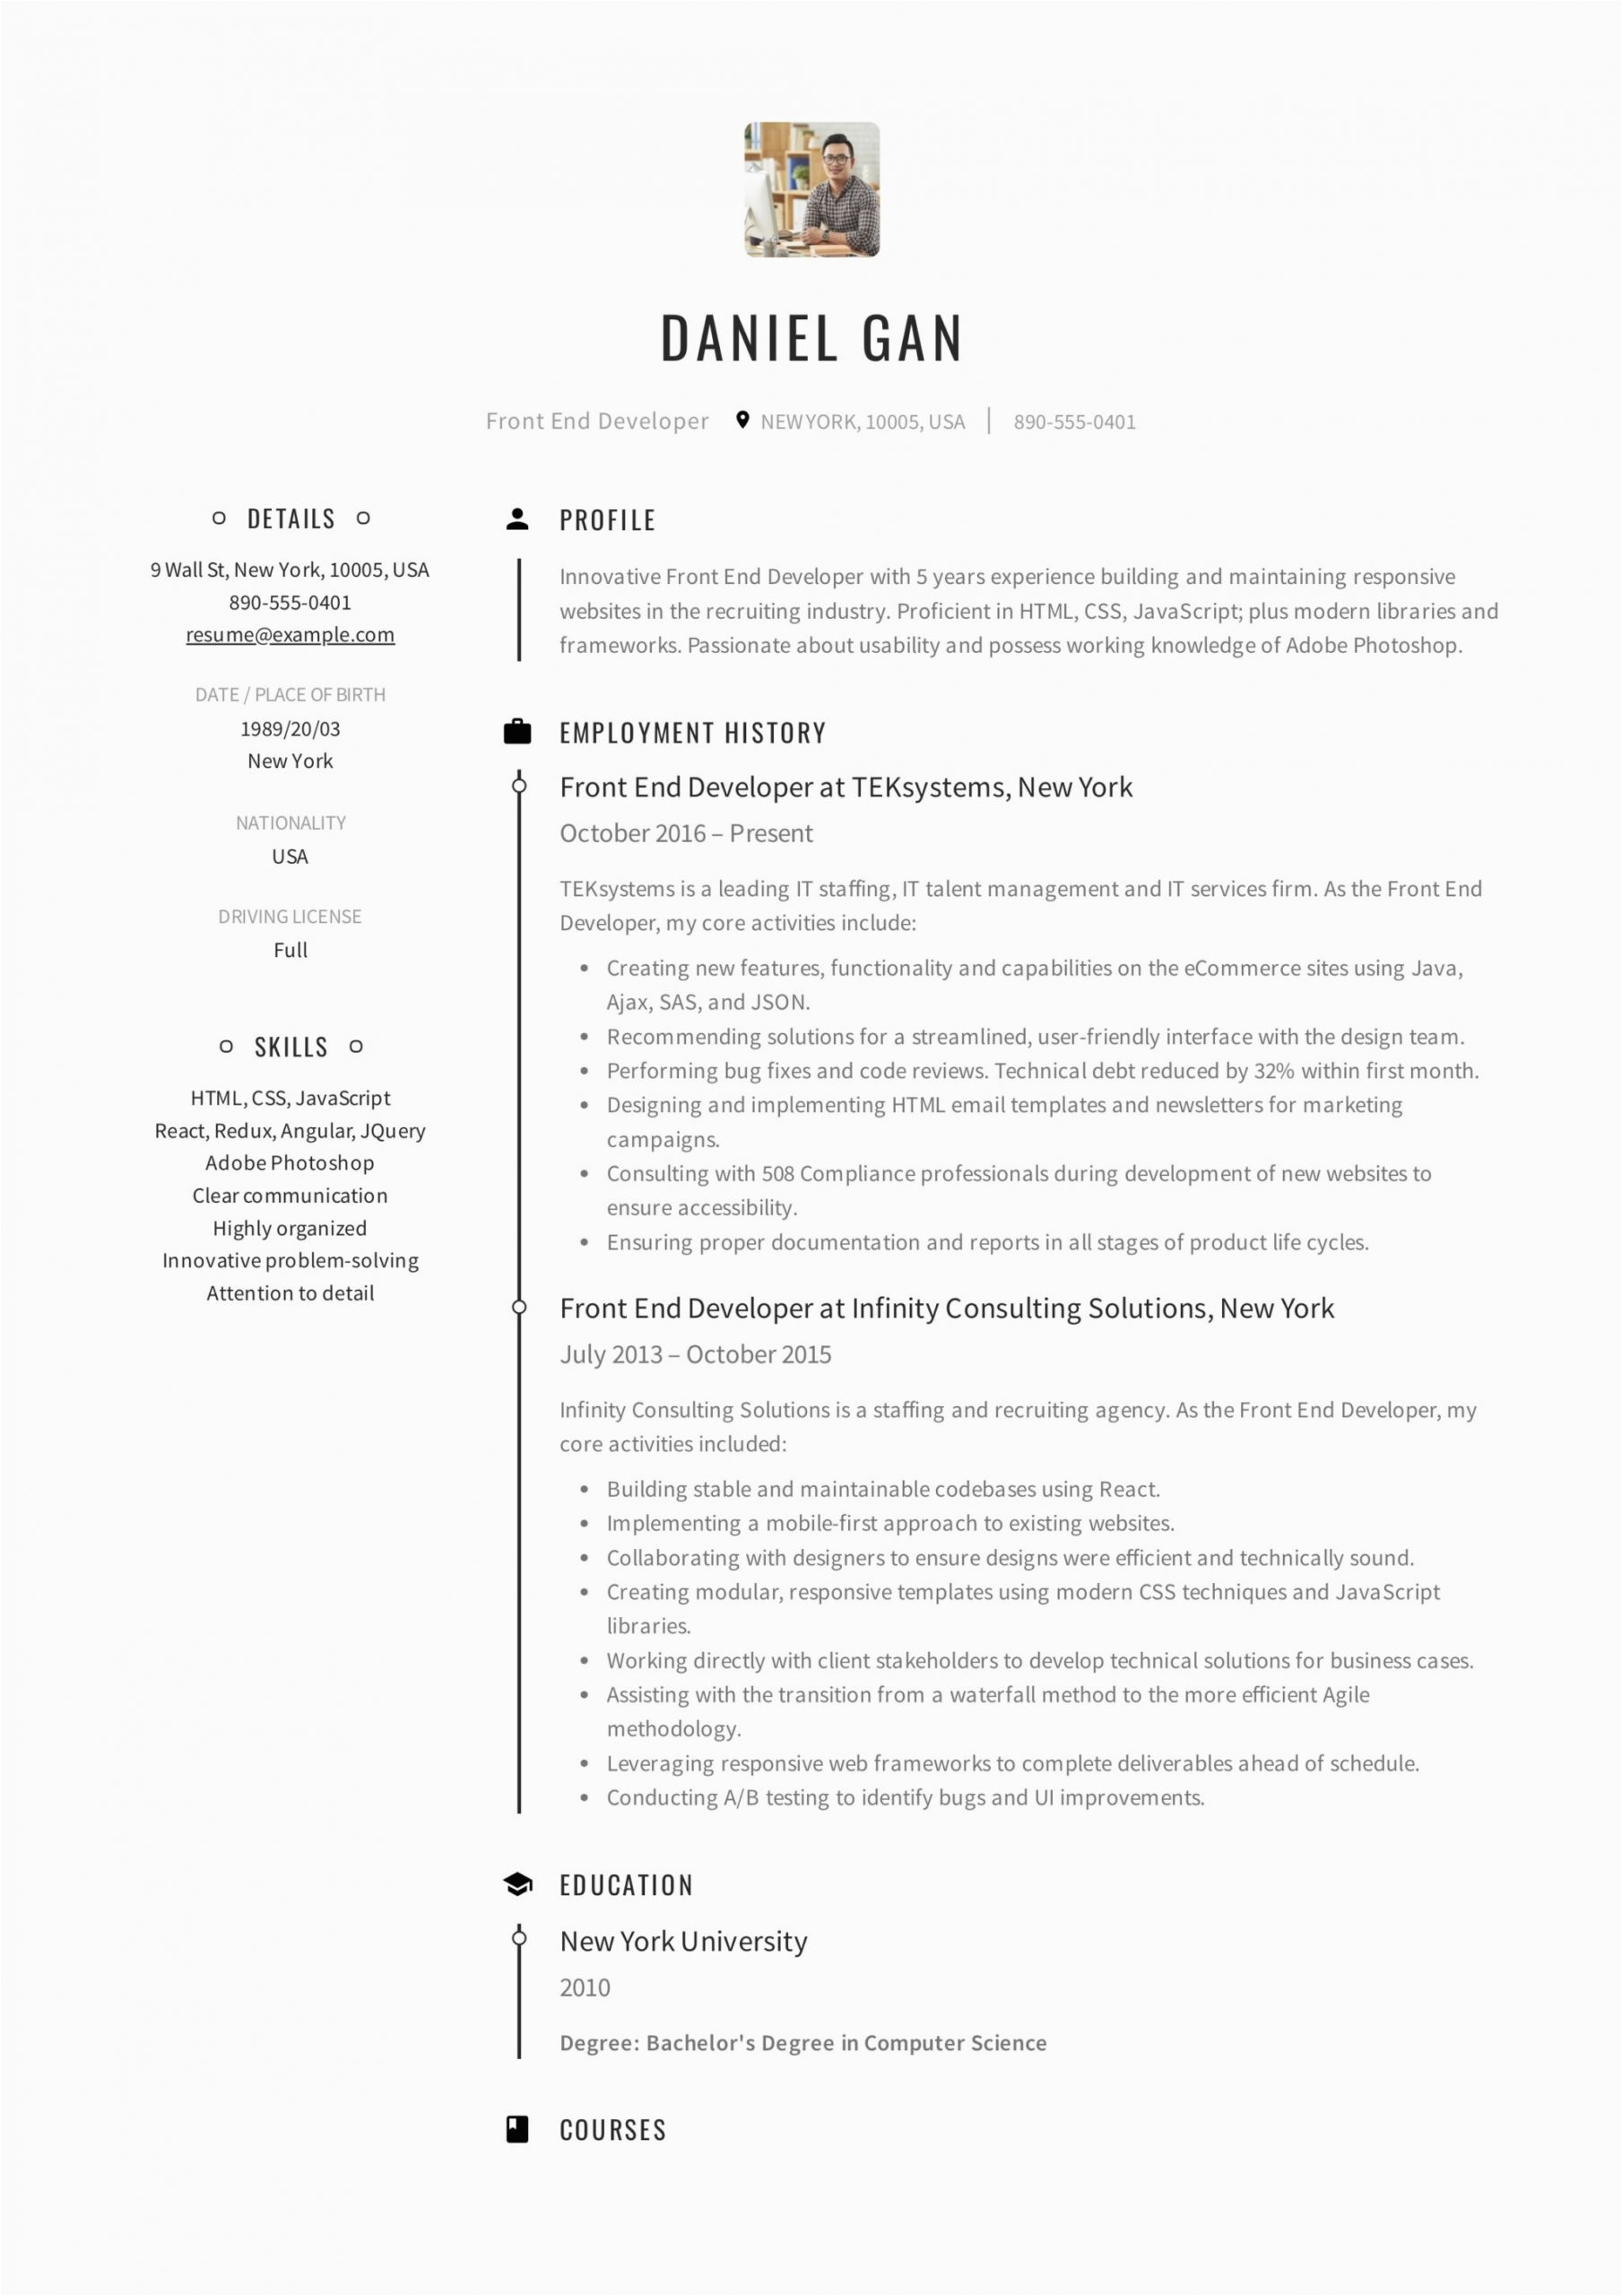 Front End Web Developer Resume Sample Guide Front End Developer Resume [ 12 Samples ]